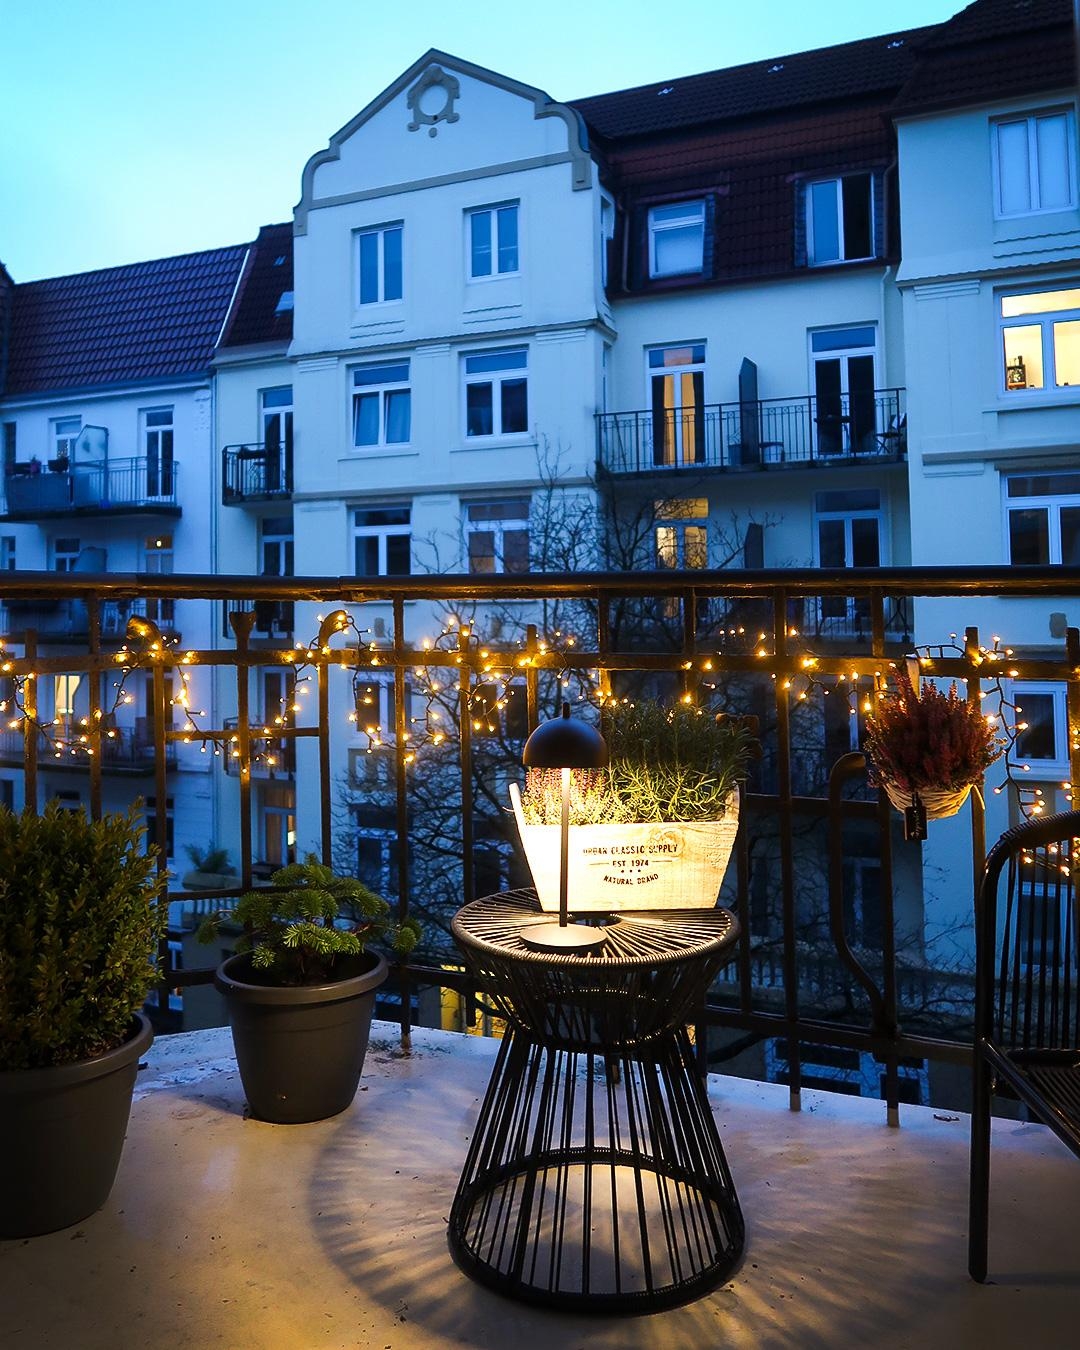 Lichterketten sind meine liebste Weihnachtsbeleuchtung ✨🥰🎄 #lichterkette #balkon #wohnklamotte